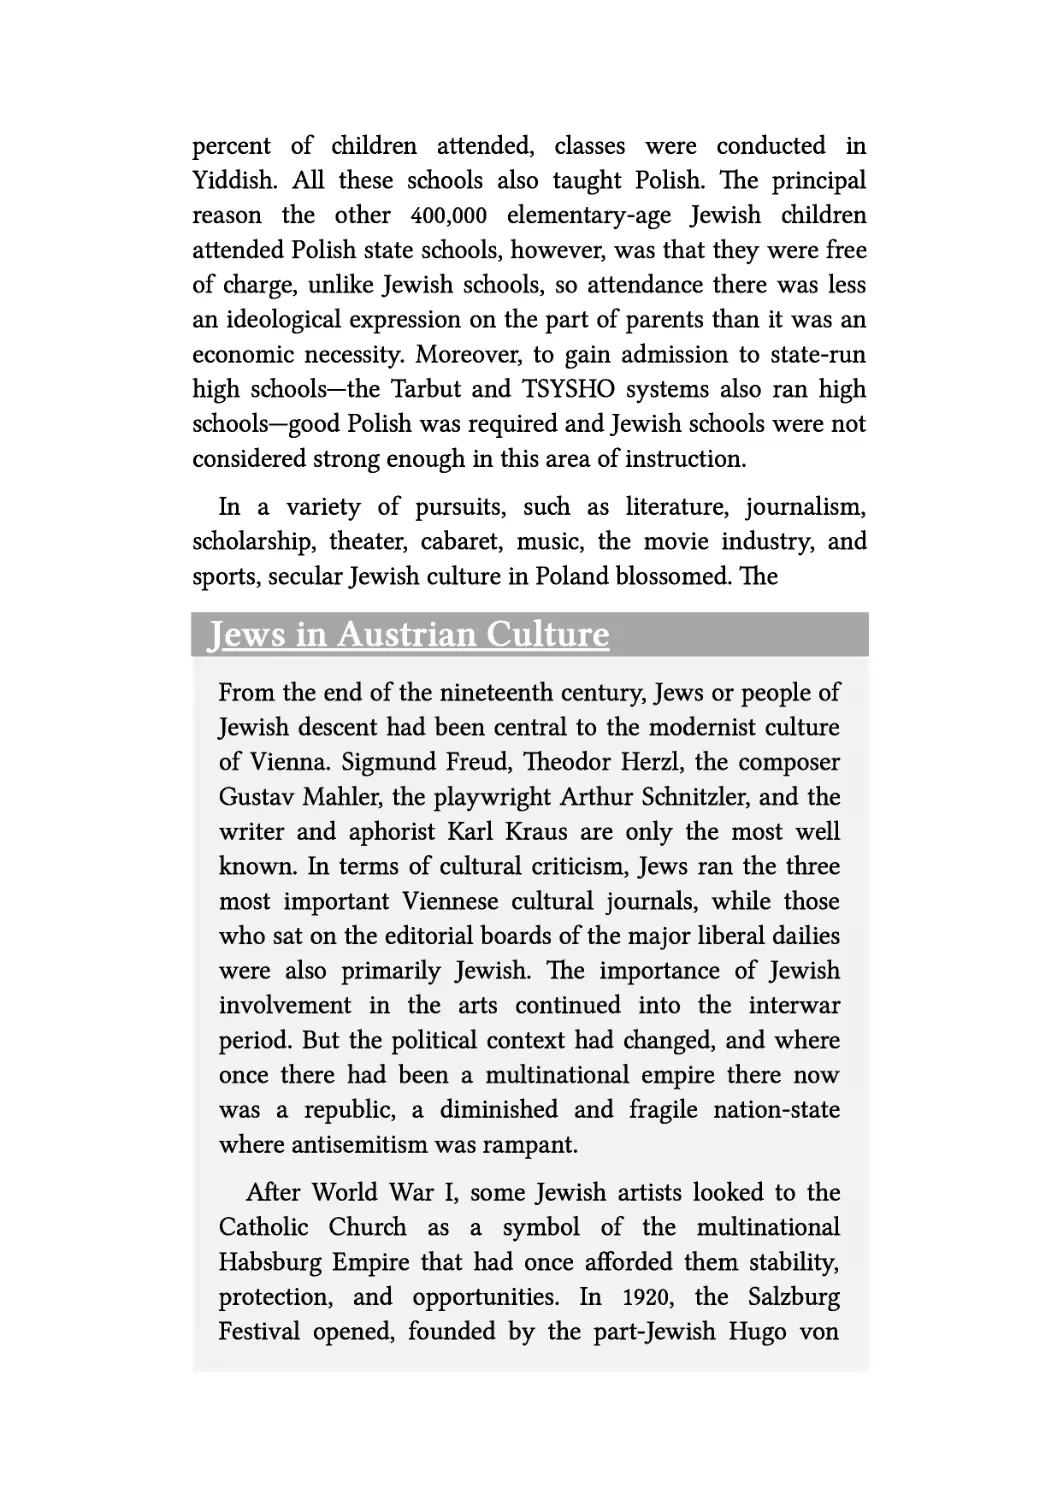 Jews in Austrian Culture